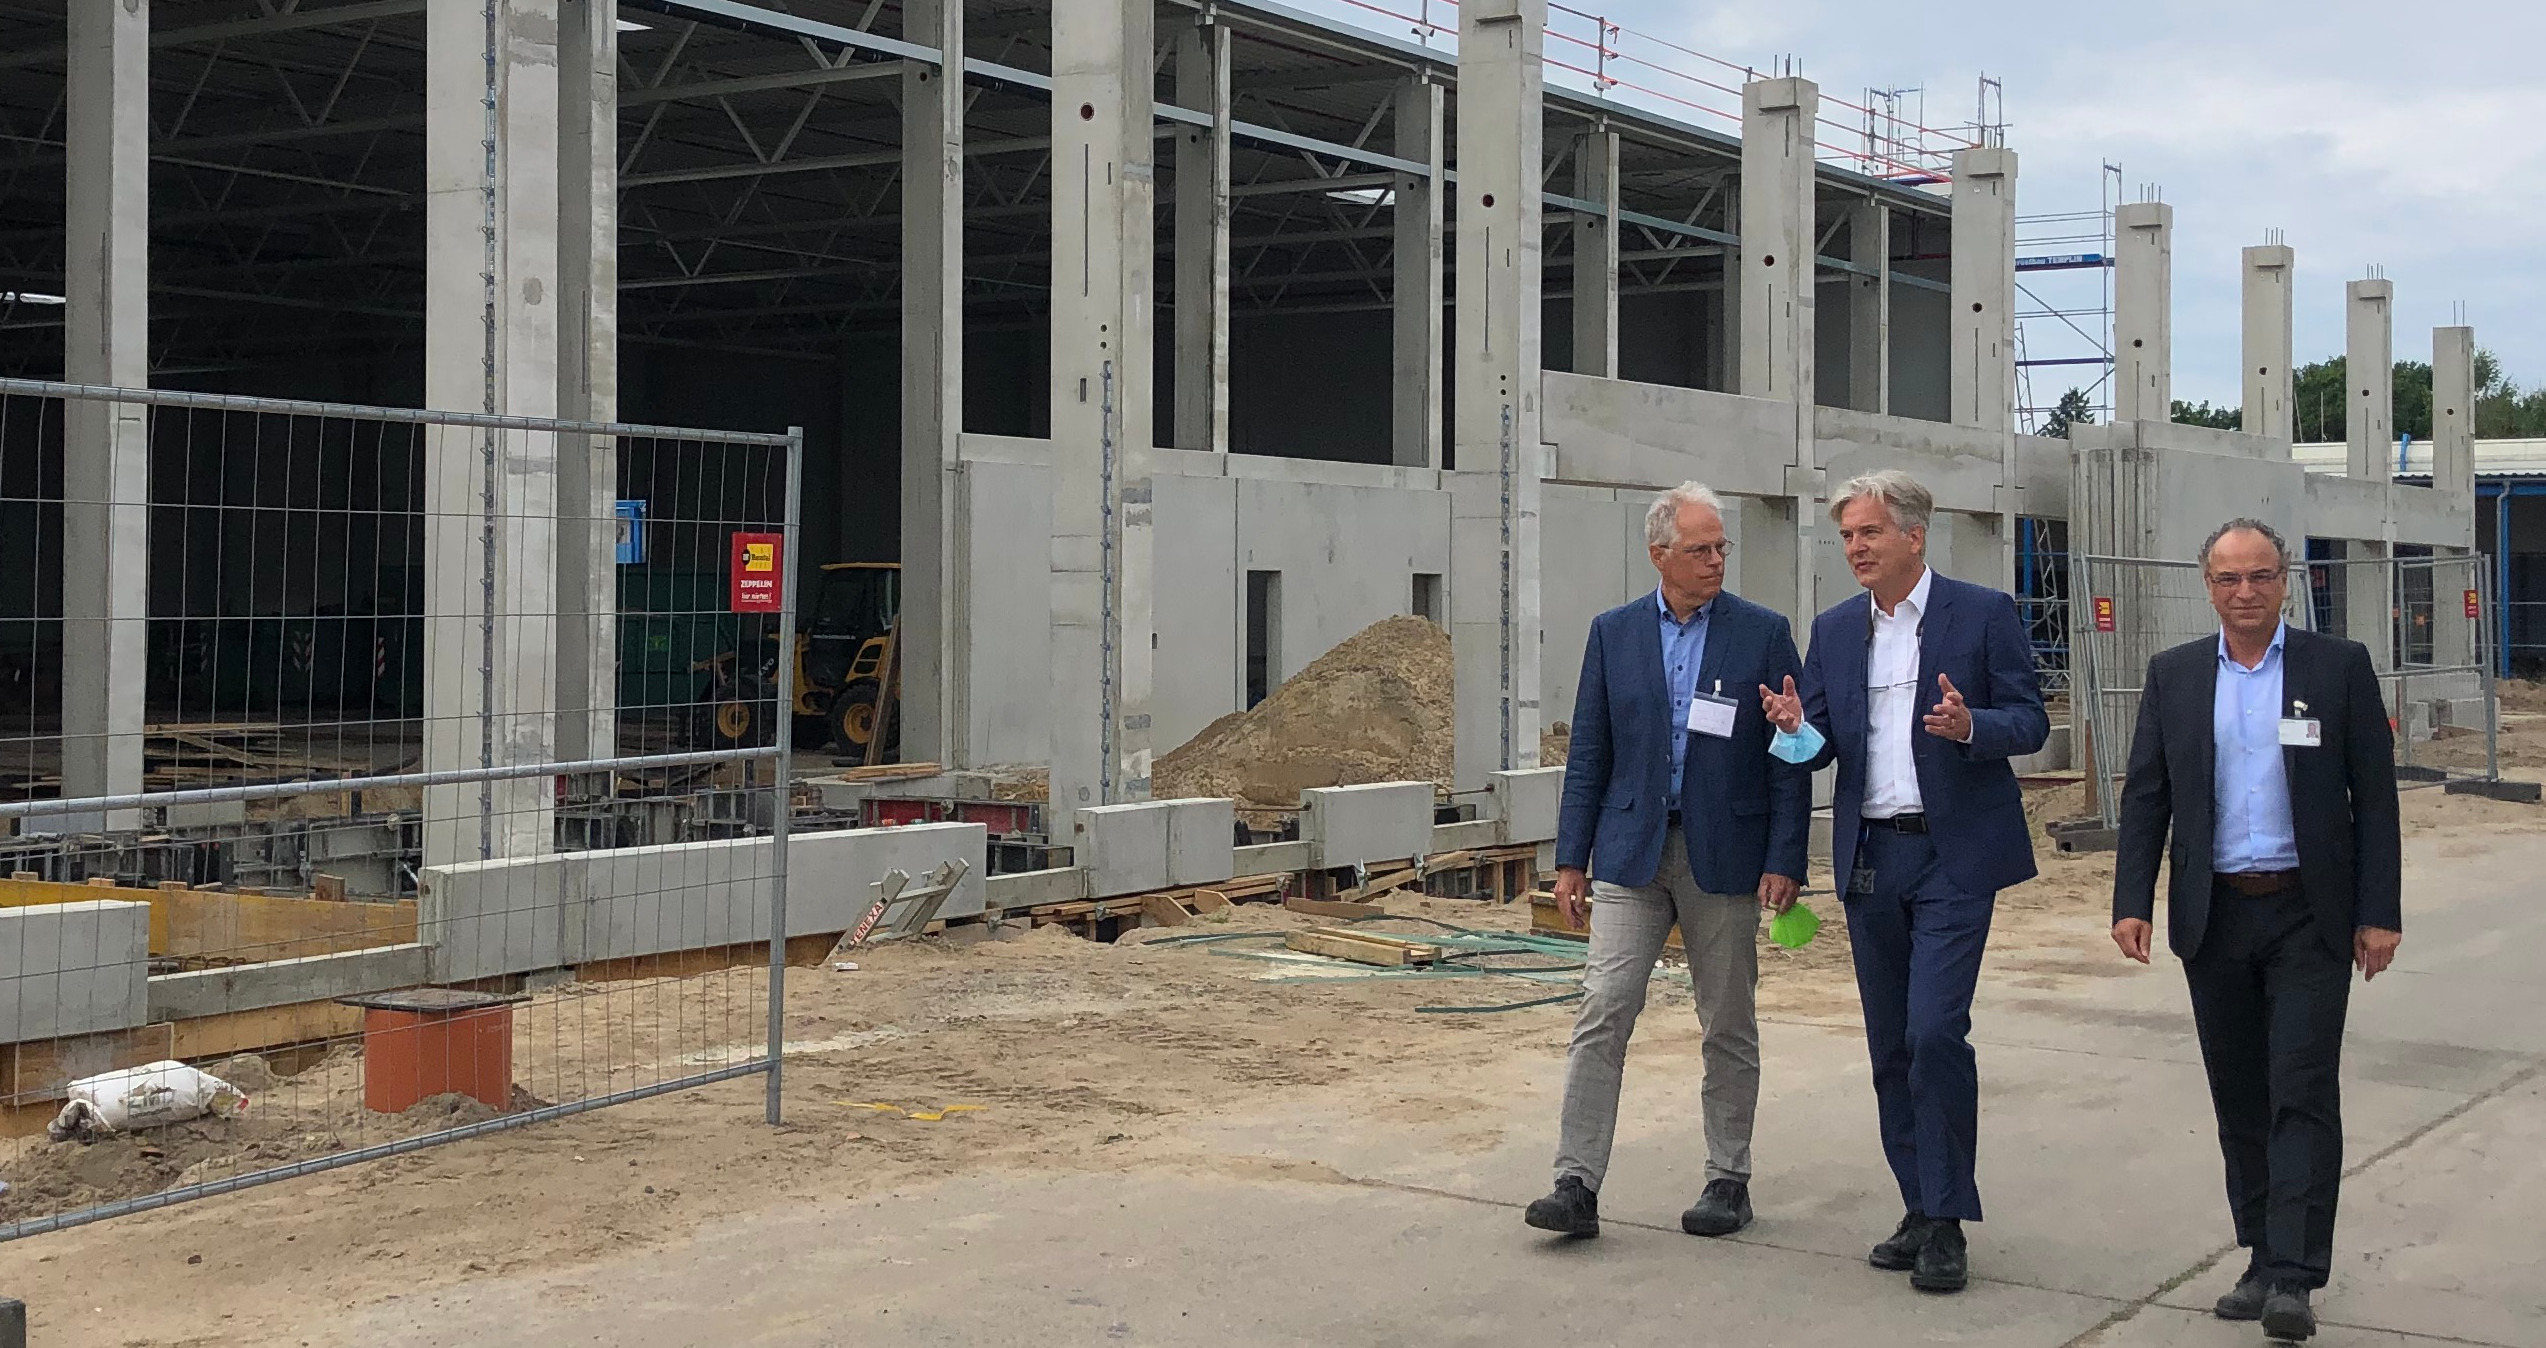 Auf Wachstumskurs: Aktuell entsteht in Zehdenick eine neue große Produktionshalle. Die beiden Geschäftsführer Andreas Kaltenbach (rechts) und Boris Biere führten über das Gelände und durch die Produktion.